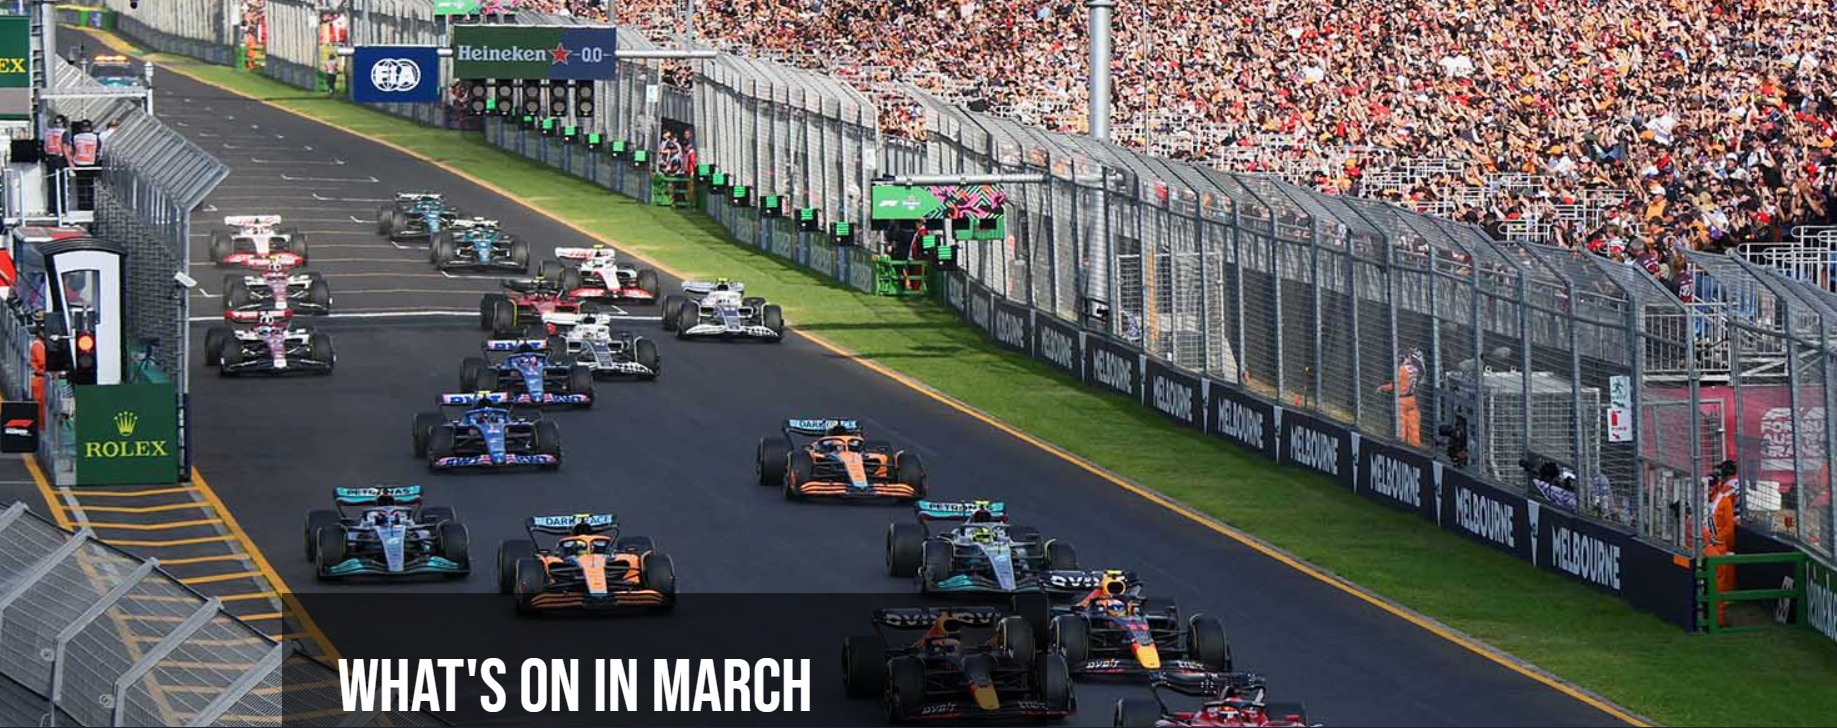 三月墨尔本将举办一级方程式澳大利亚大奖赛